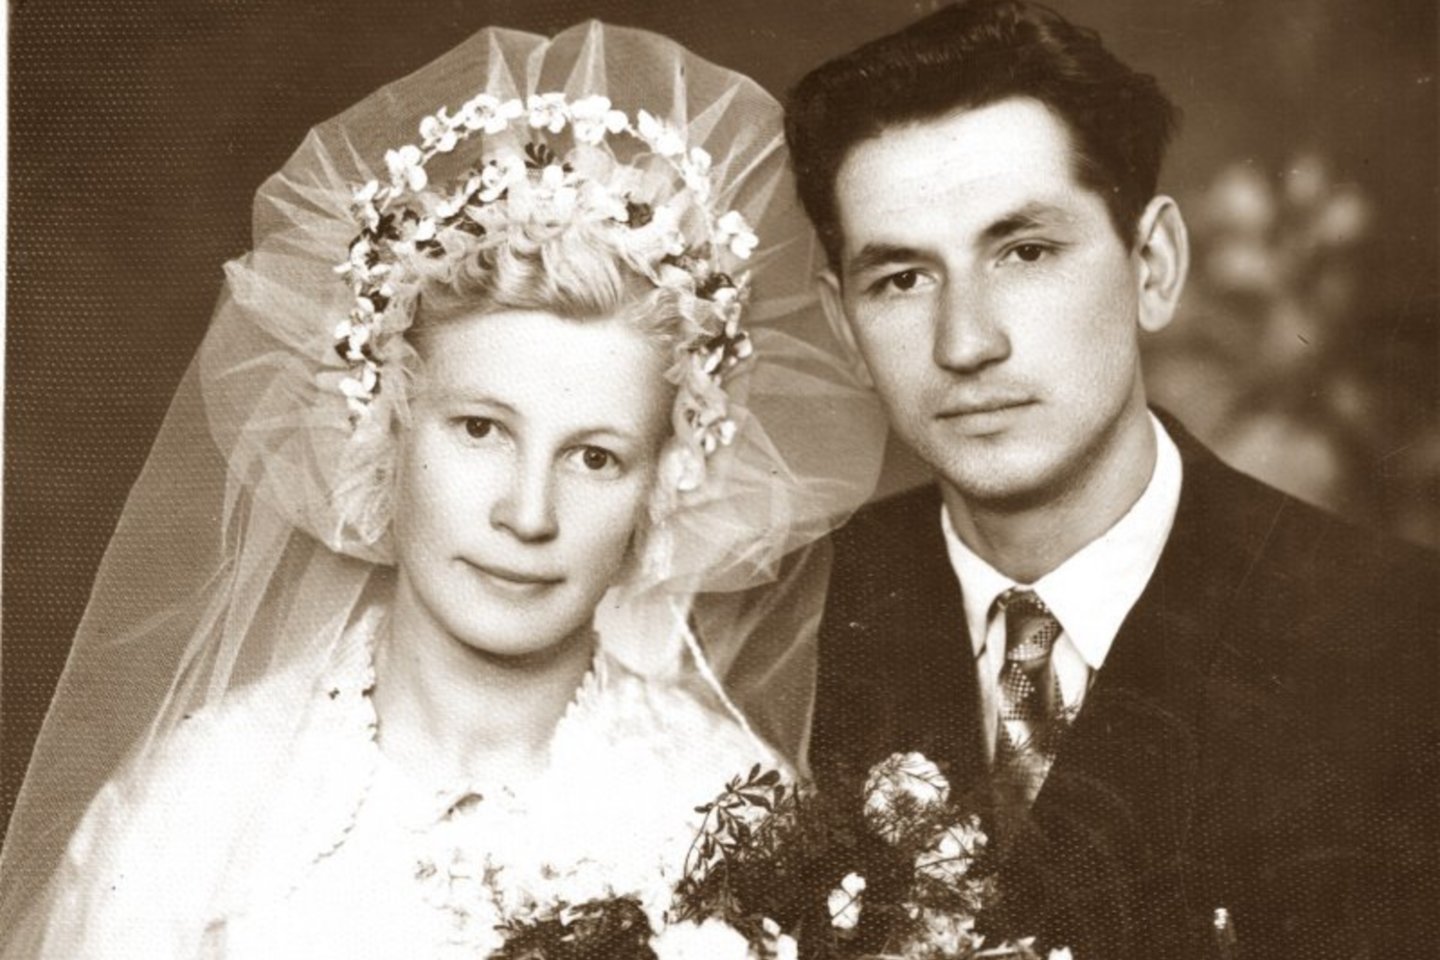  Sūnus saugo savo tėvų Jankūnų vestuvinę 1961 metų nuotrauką.<br>A.Švelnos, Biržų krašto muziejaus „Sėla“ ir asmeninio G.Jankūno albumo nuotr.